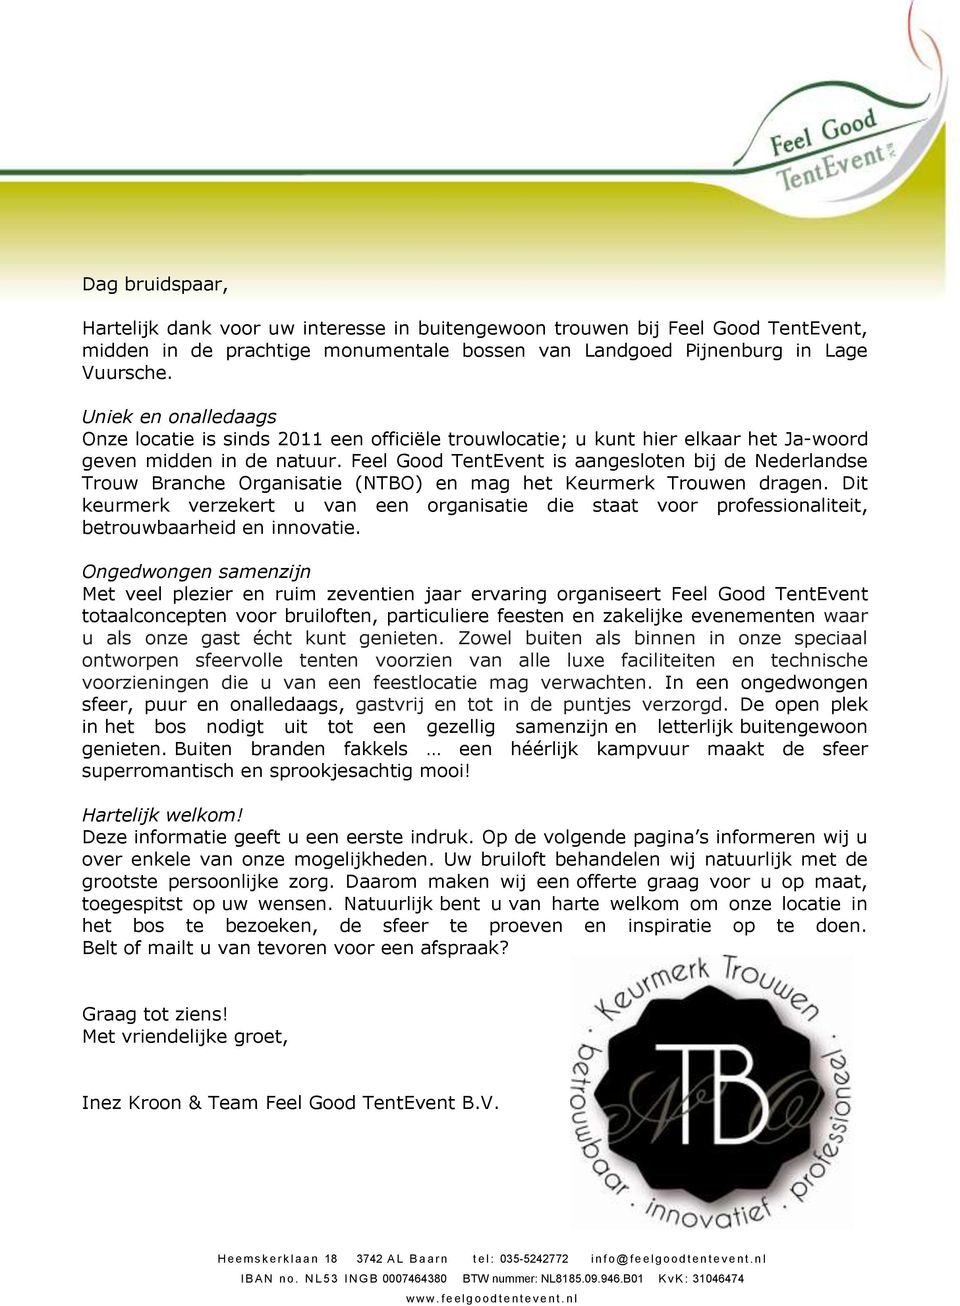 Feel Good TentEvent is aangesloten bij de Nederlandse Trouw Branche Organisatie (NTBO) en mag het Keurmerk Trouwen dragen.